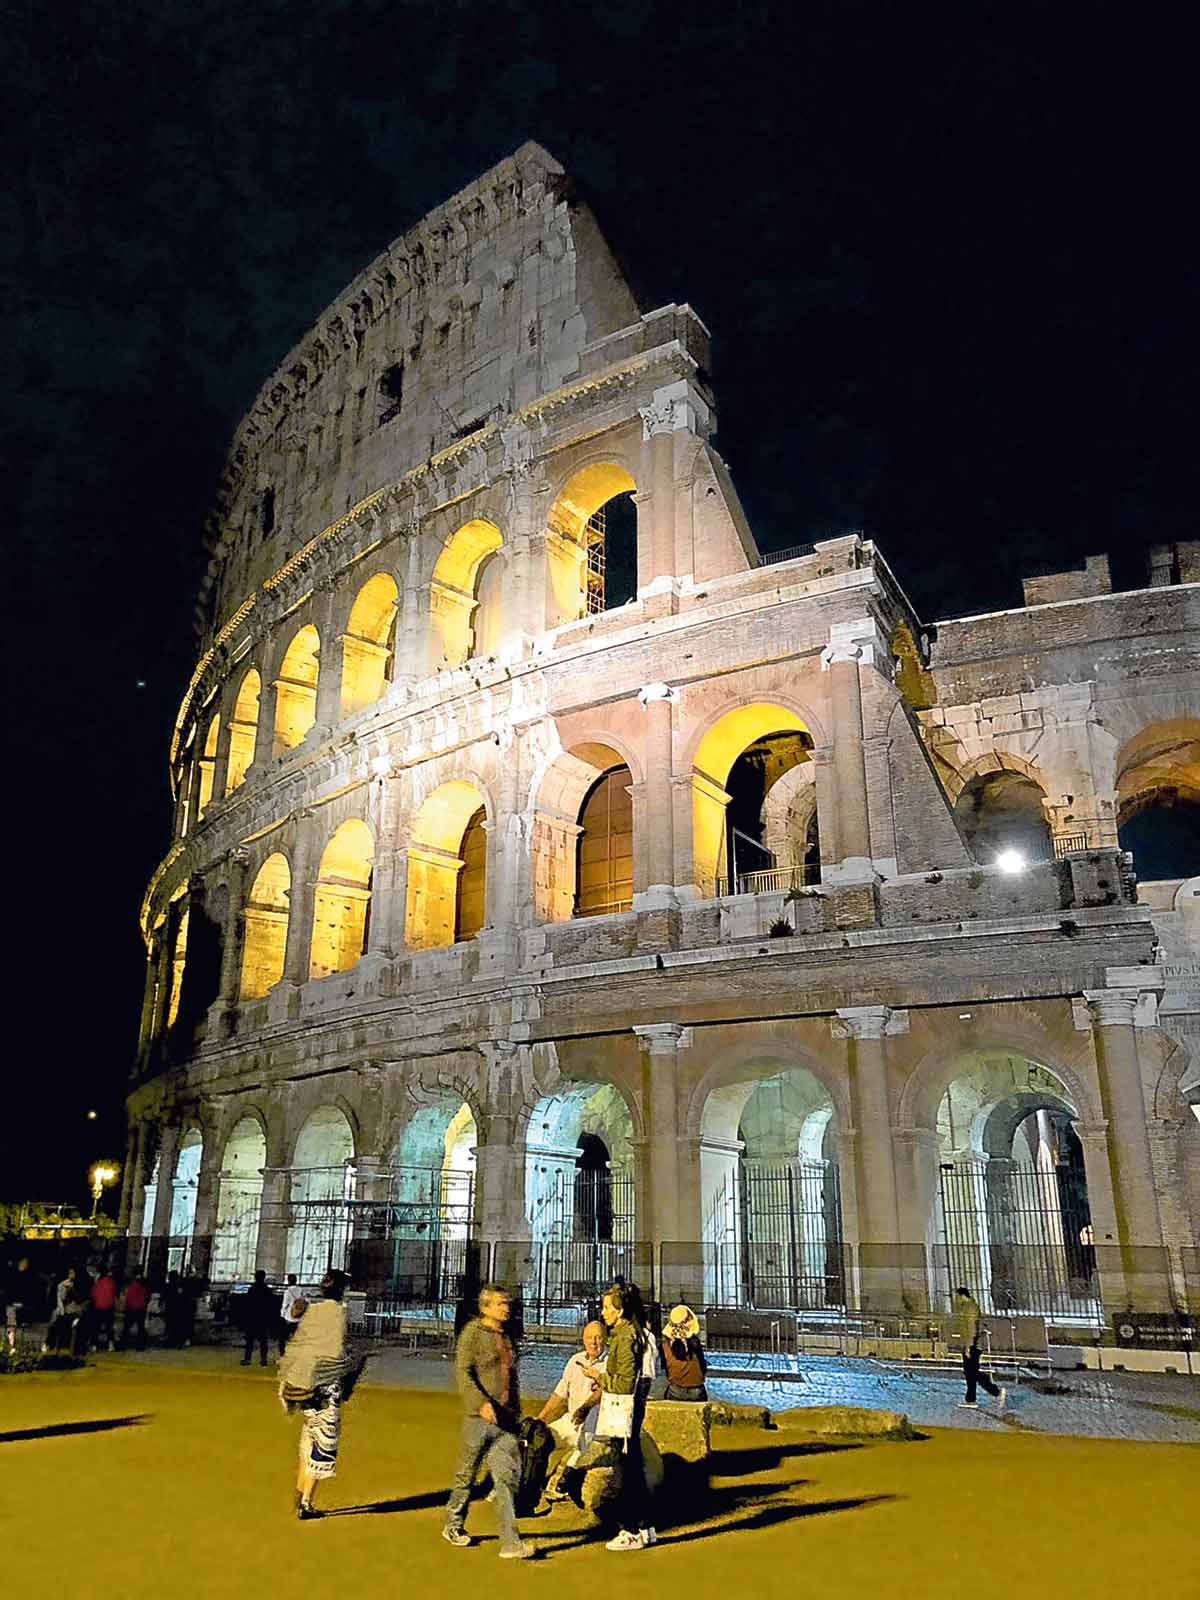 Roman Architecture - The Colosseum of Rome